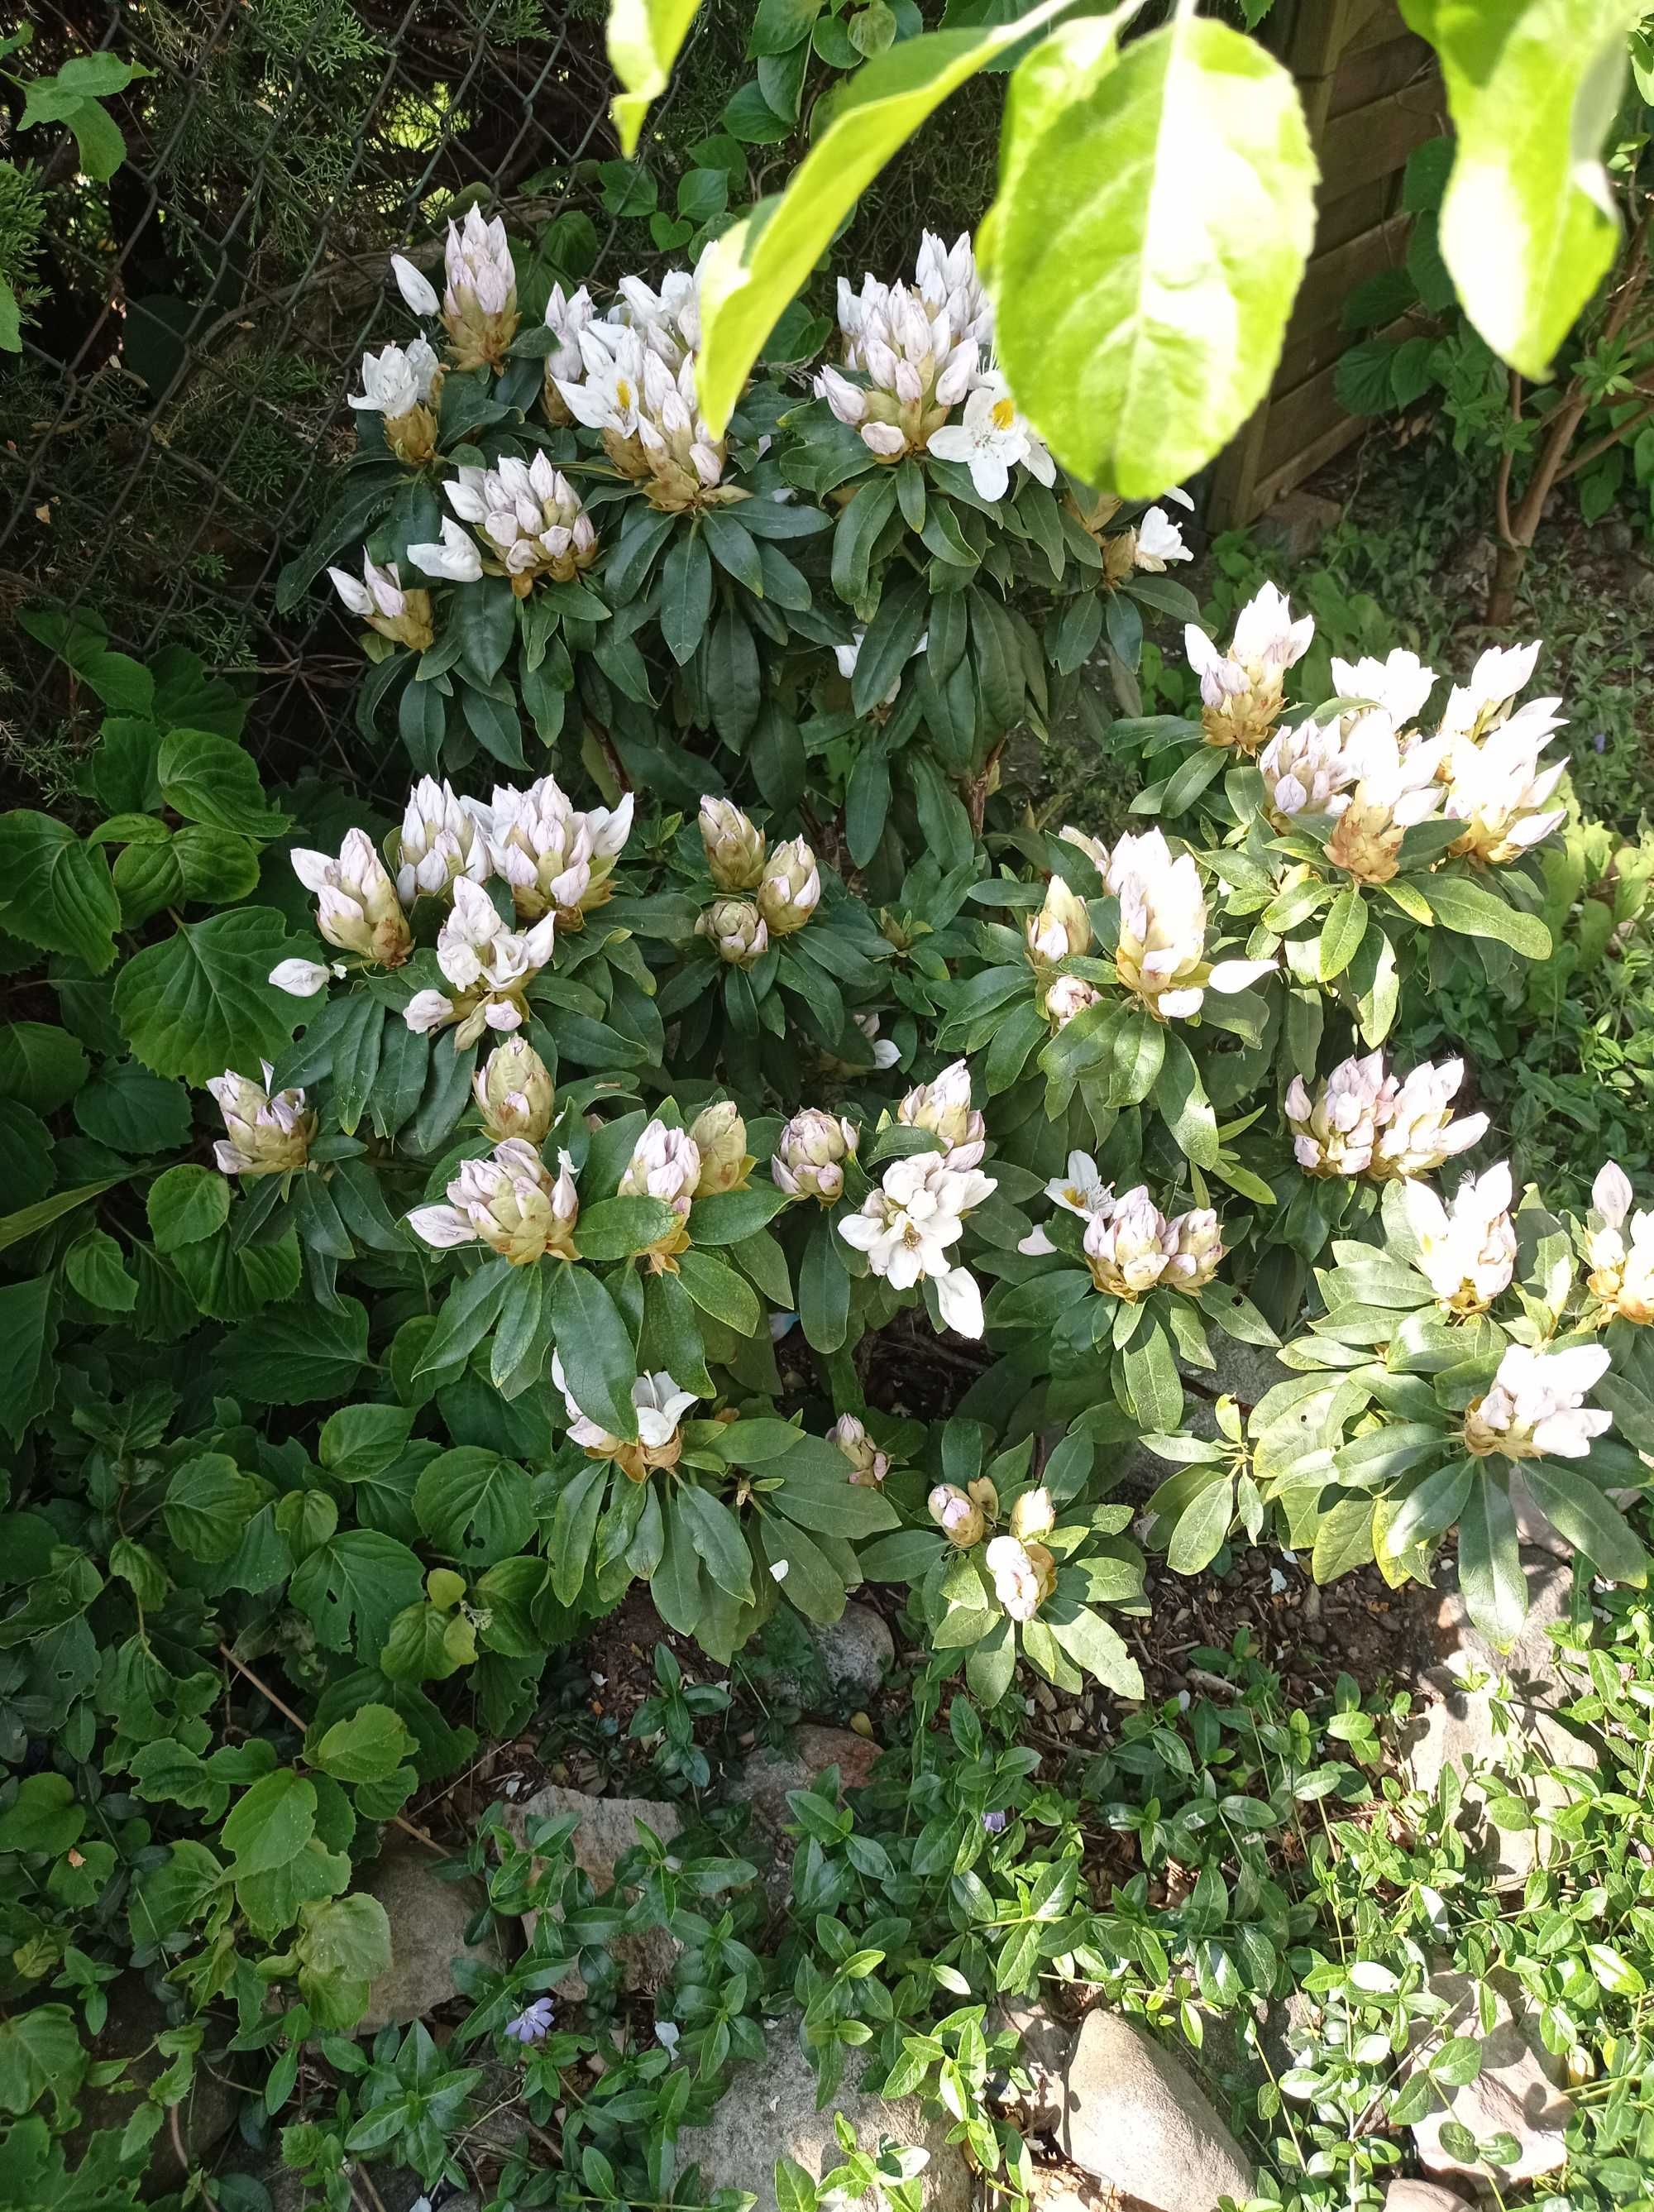 Rododendron Madame Masson biały,  4 letni w donicy,